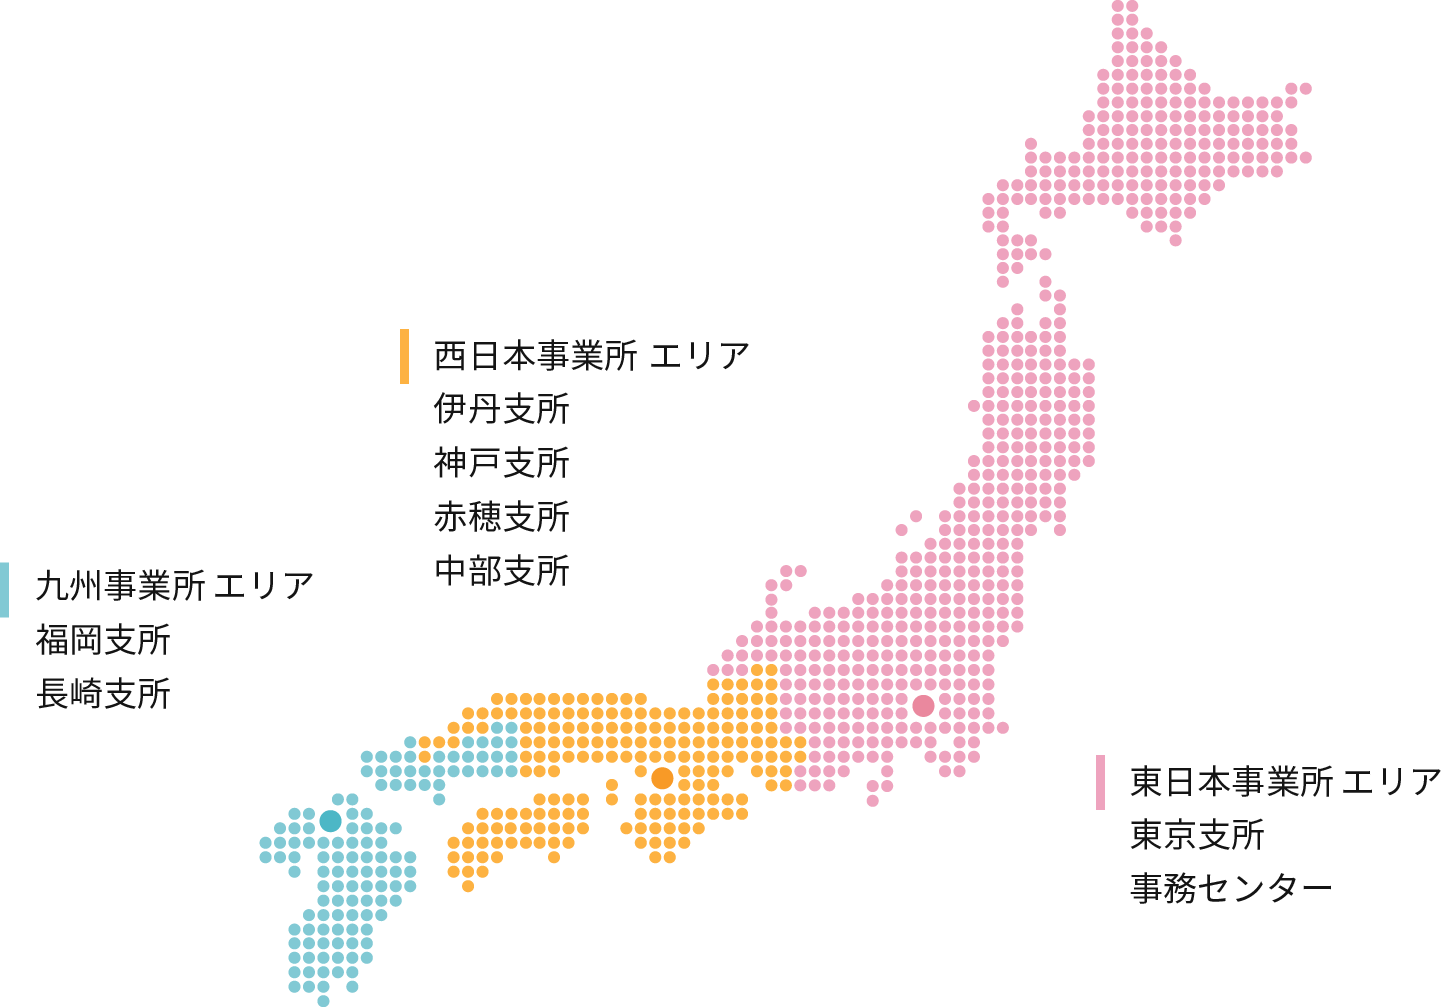 東日本事業所エリア、西日本事業所エリア、九州事業所エリアの地図画像